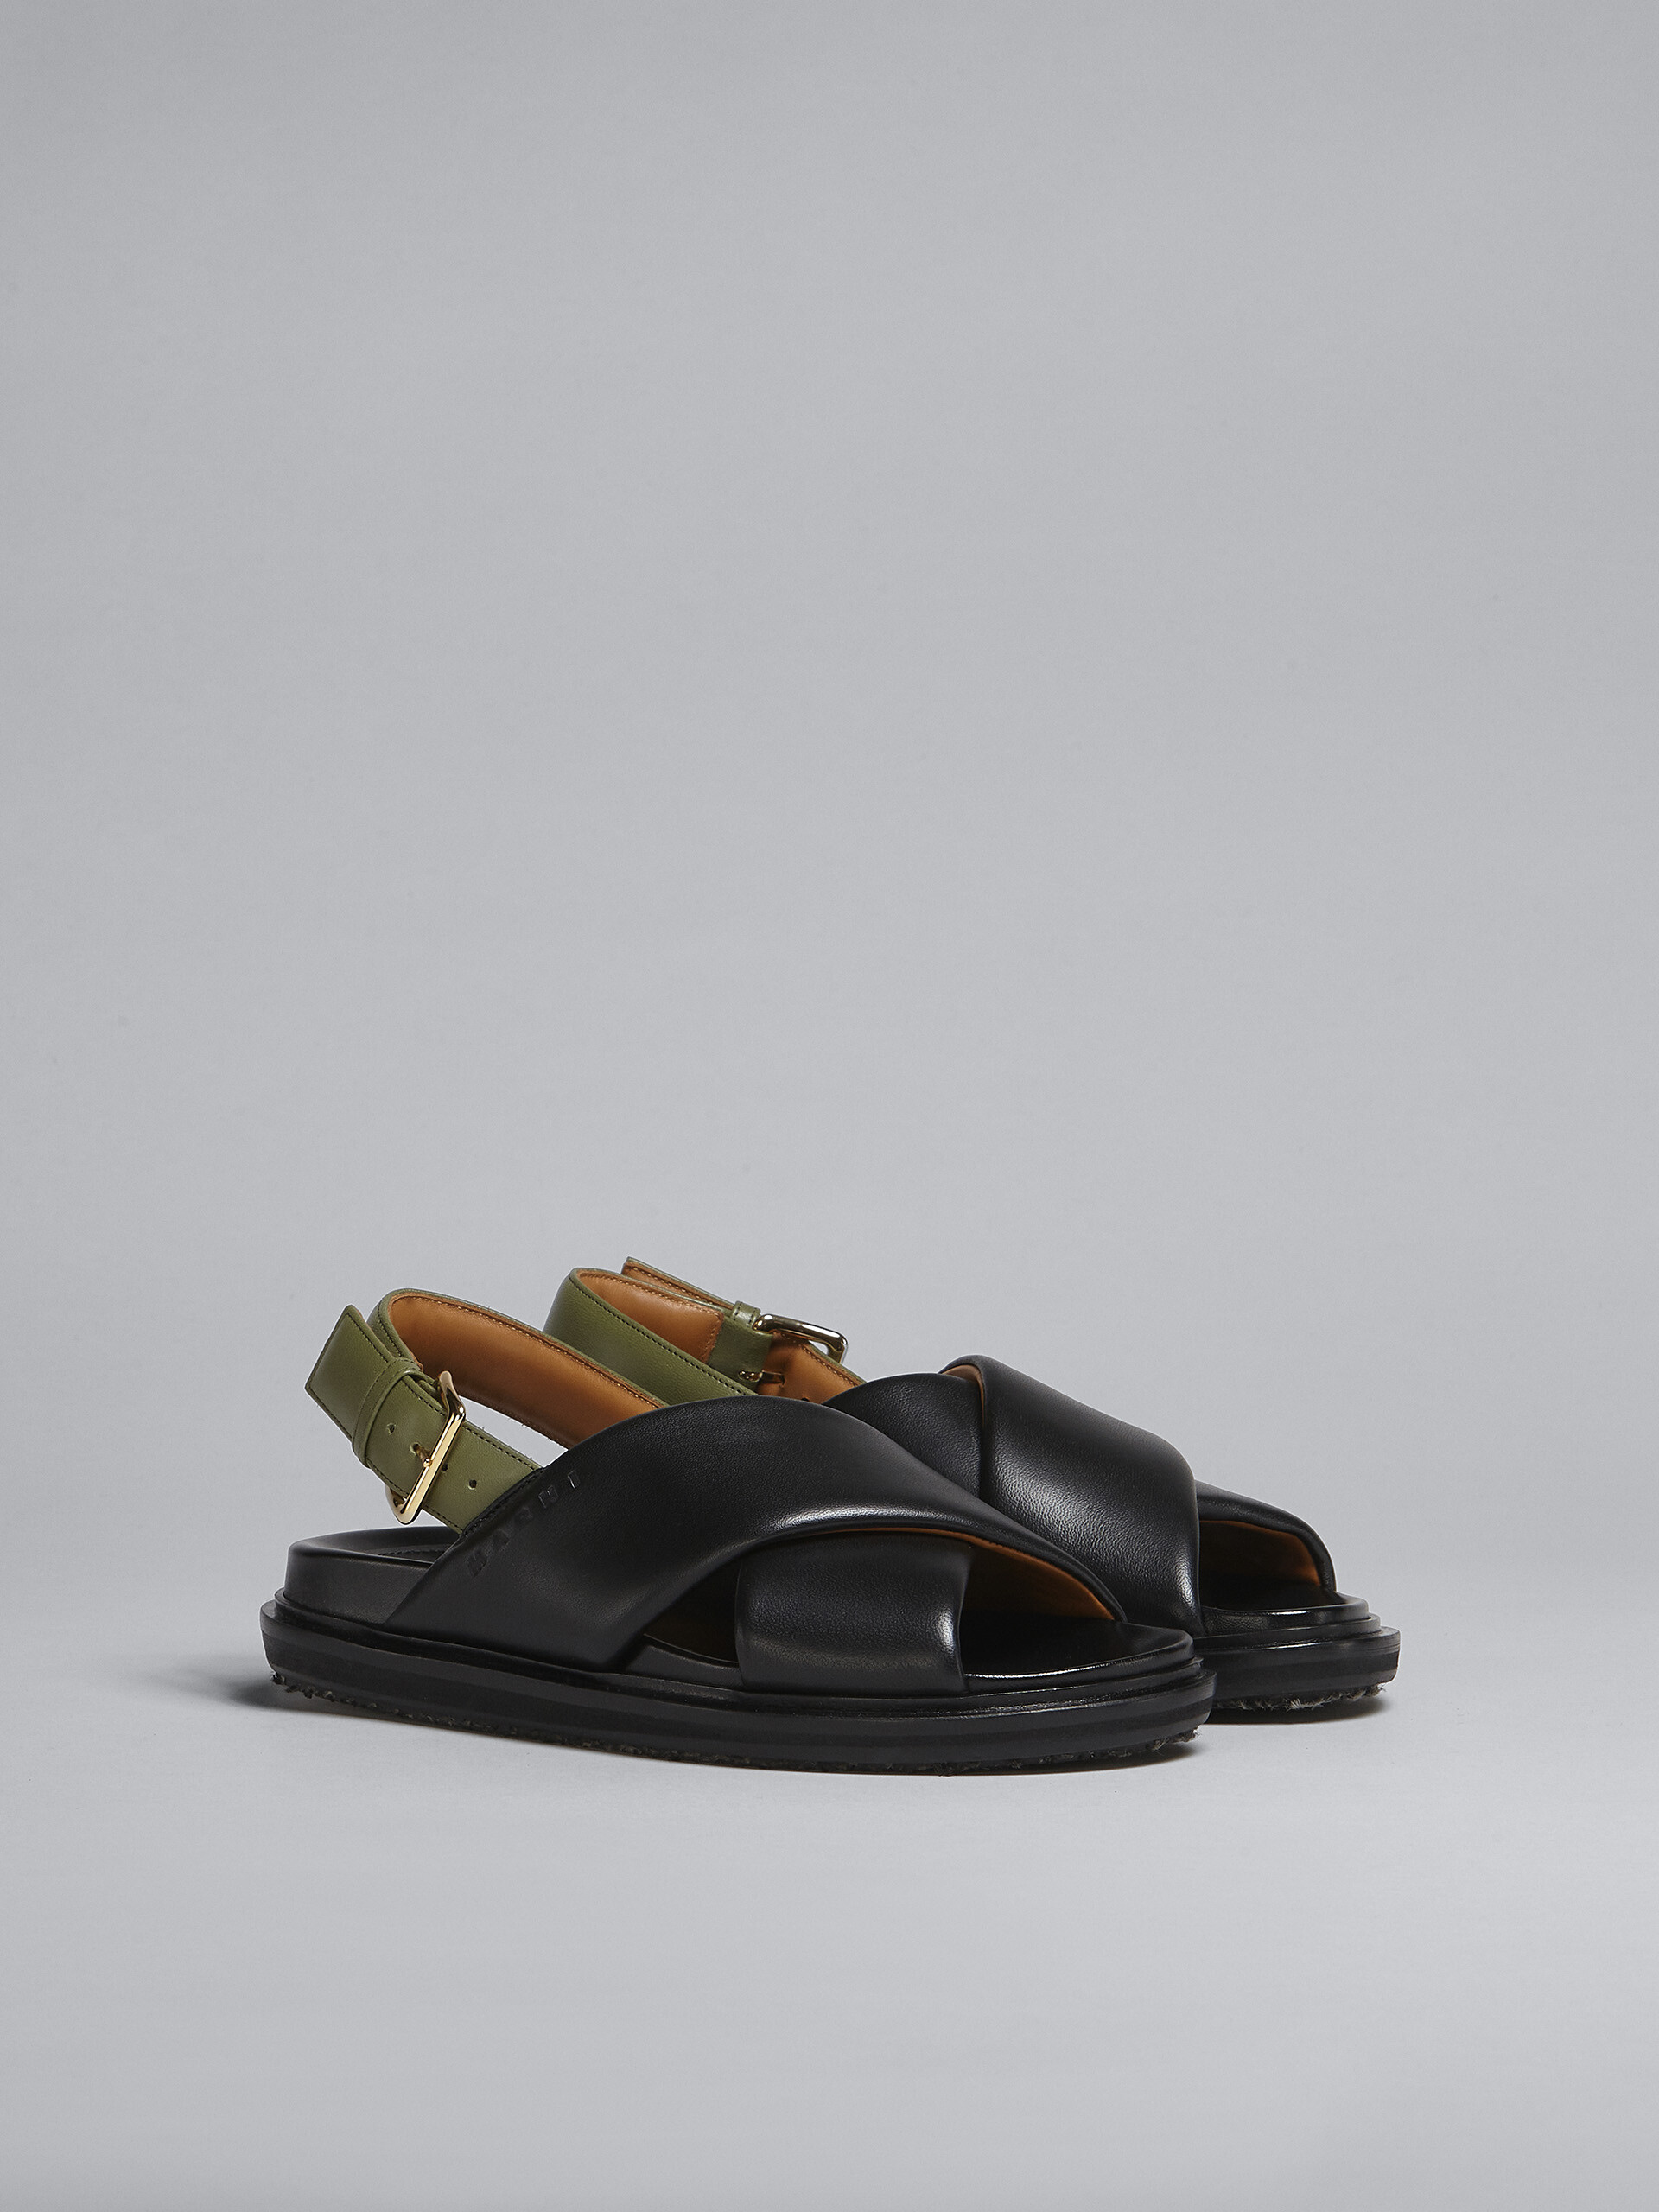 블랙 및 그린 가죽 퍼스베트 - Sandals - Image 2